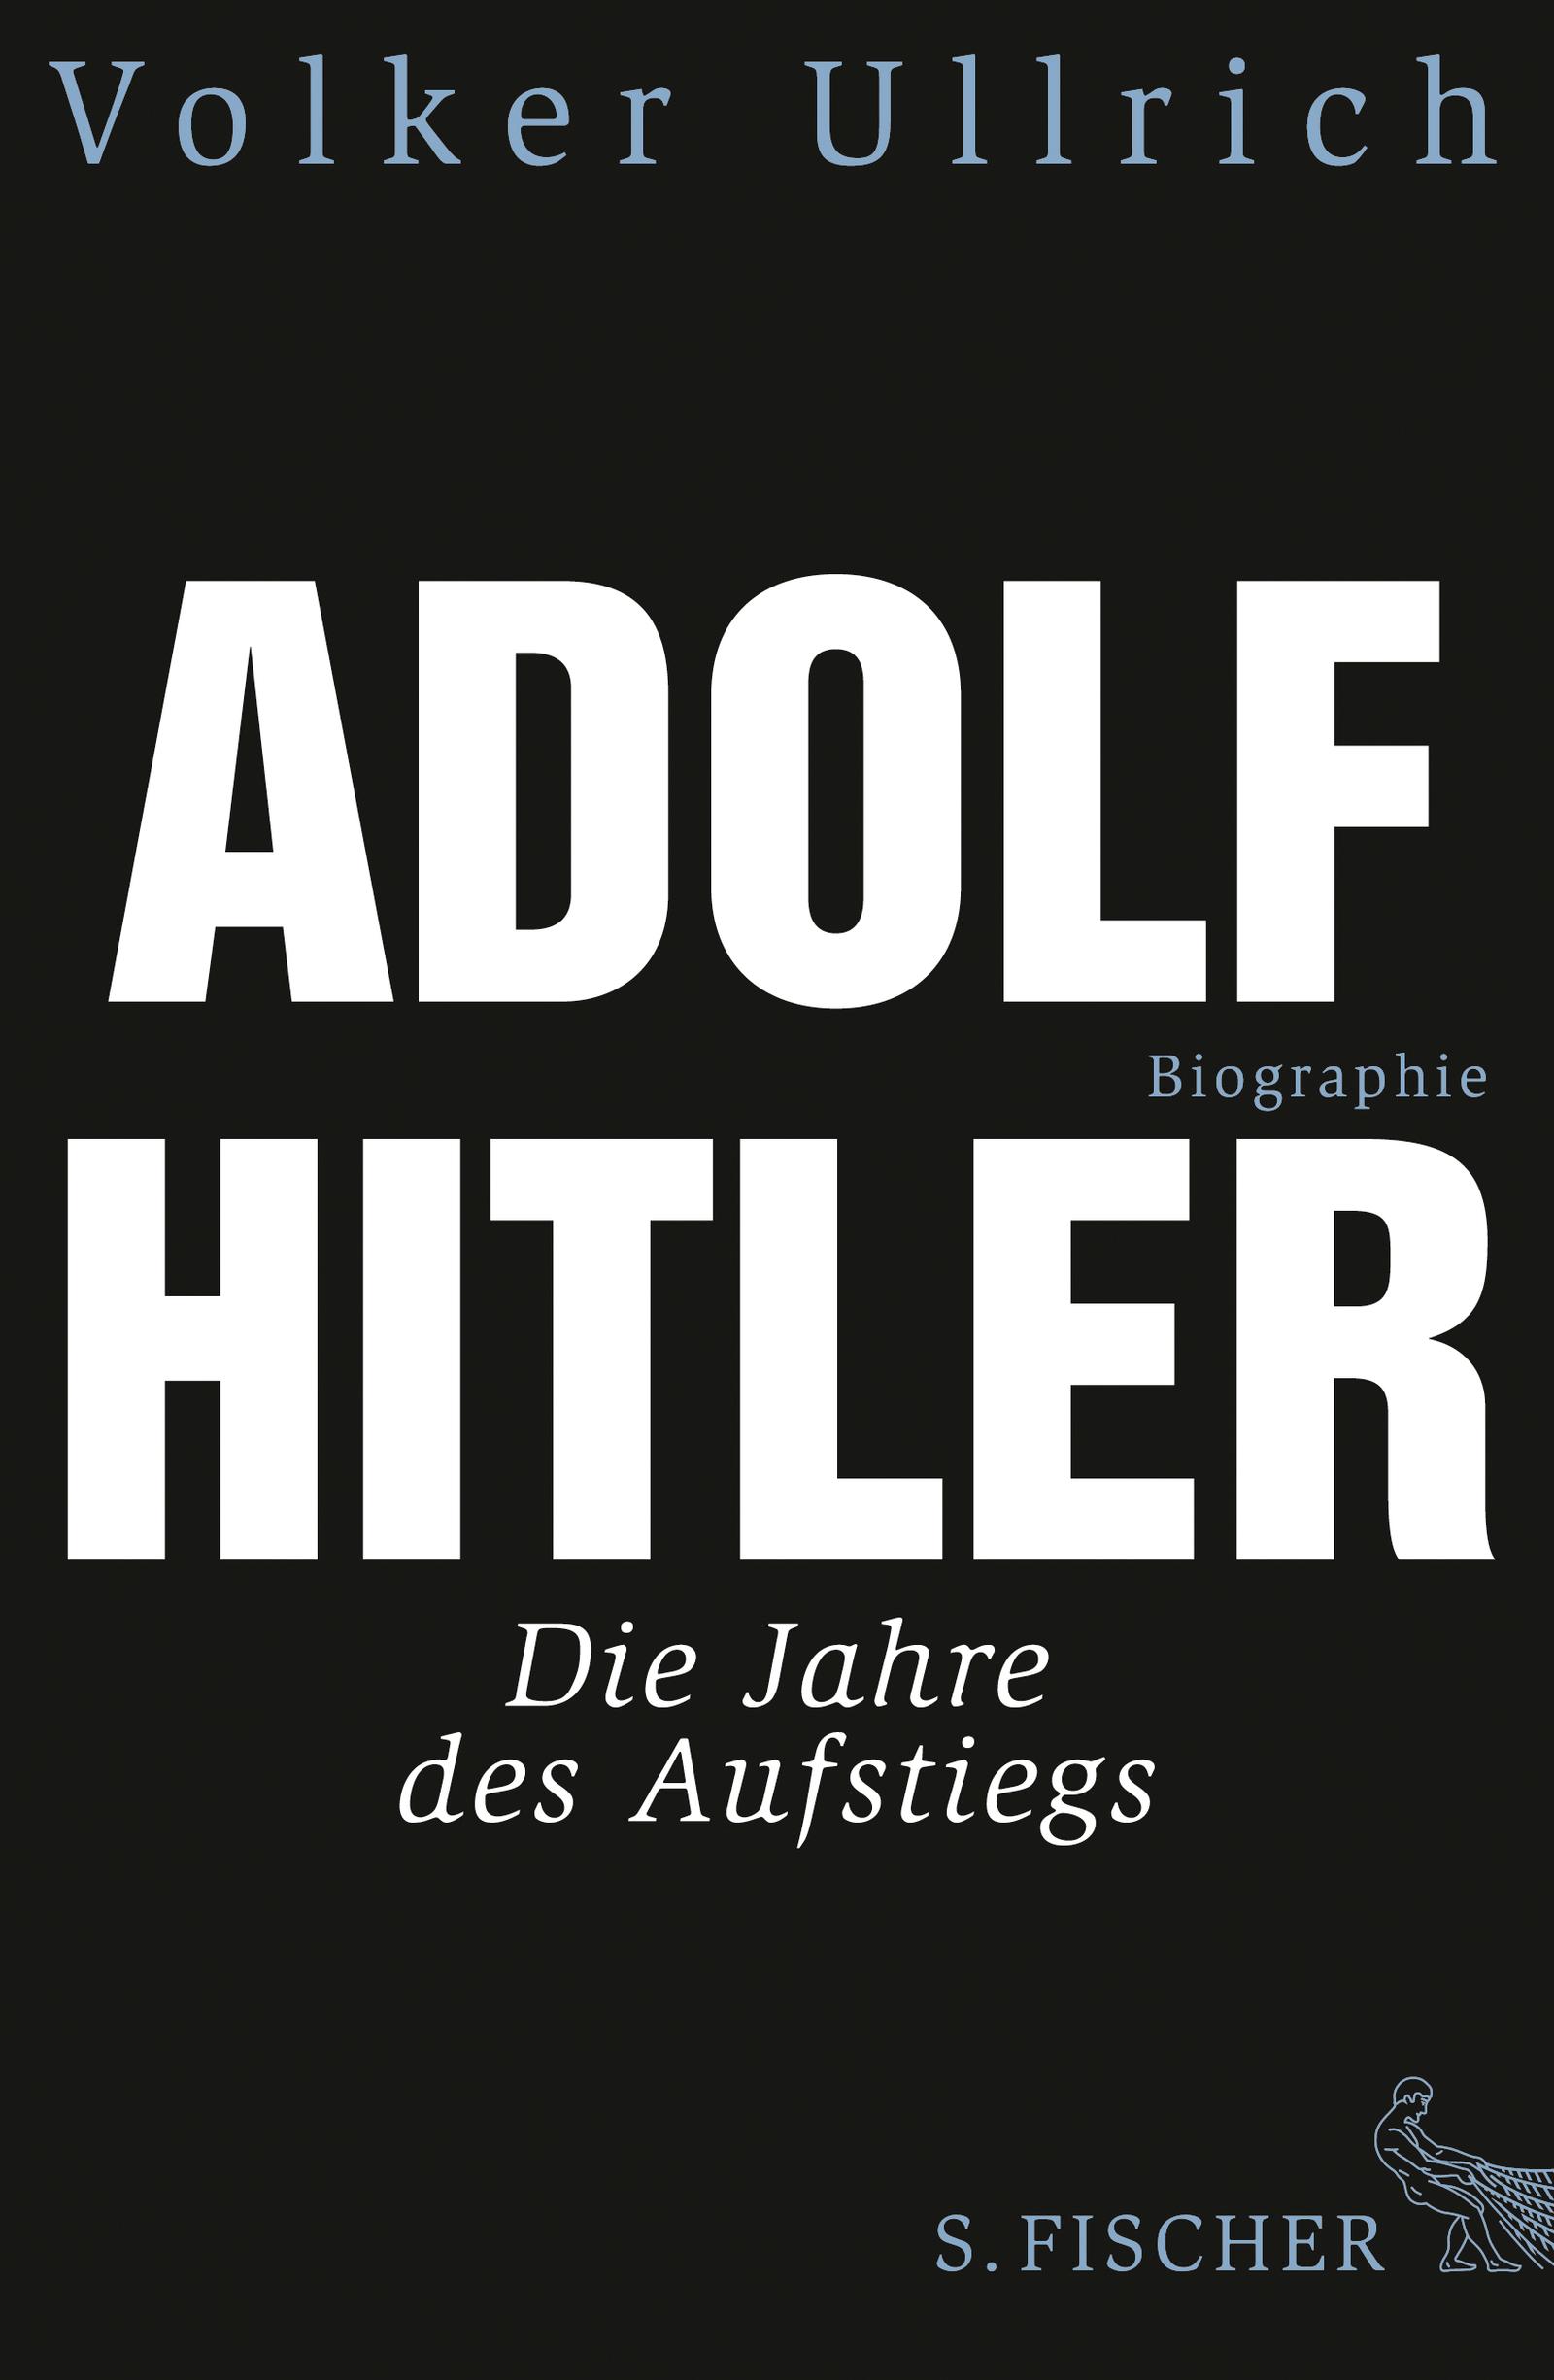 Adolf Hitler Die Jahre des Aufstiegs 1889 - 1939 Biographie